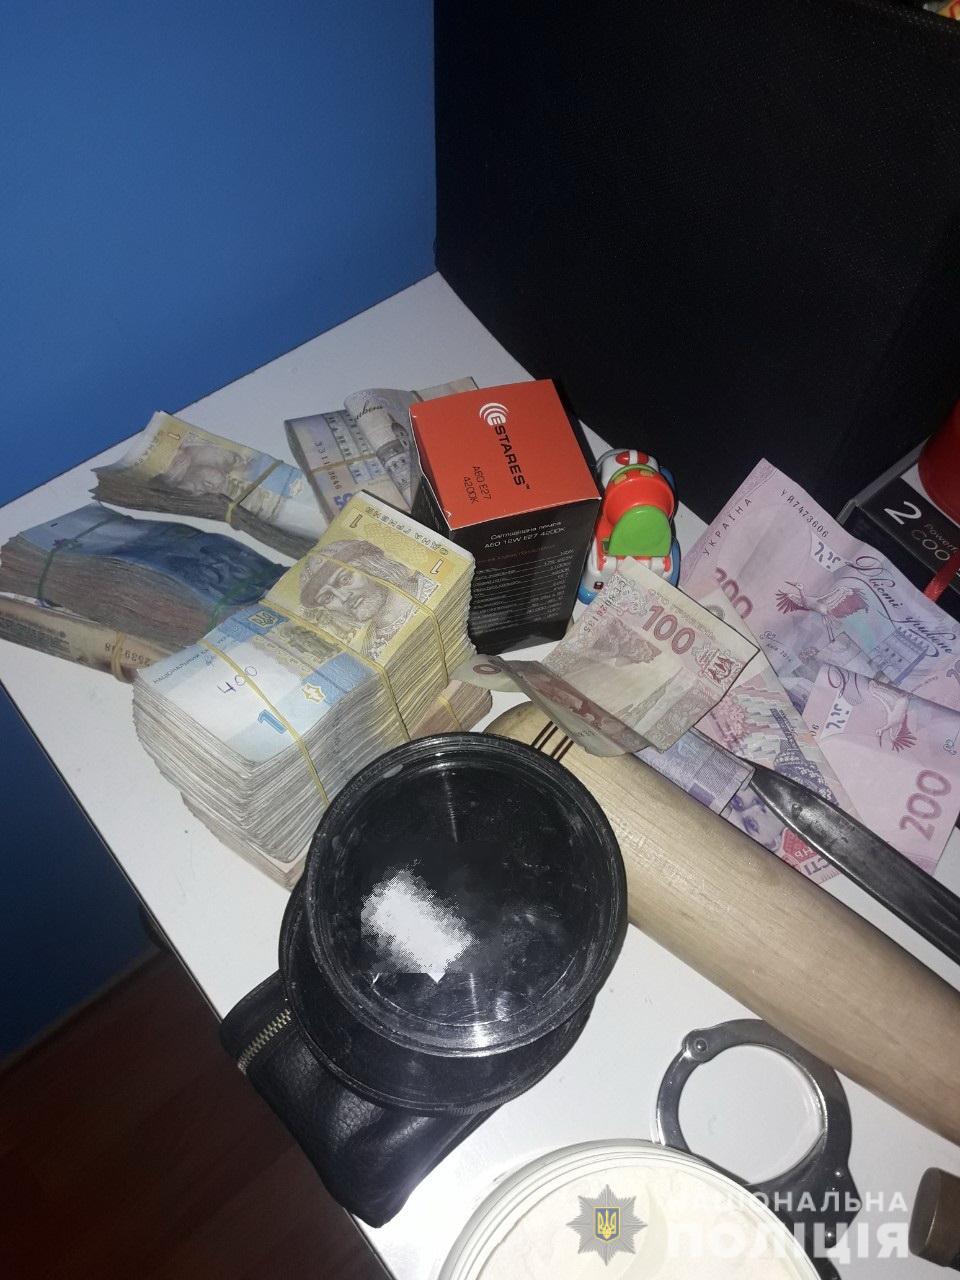 Поліція Закарпаття знешкодила групу наркоділків у Мукачево